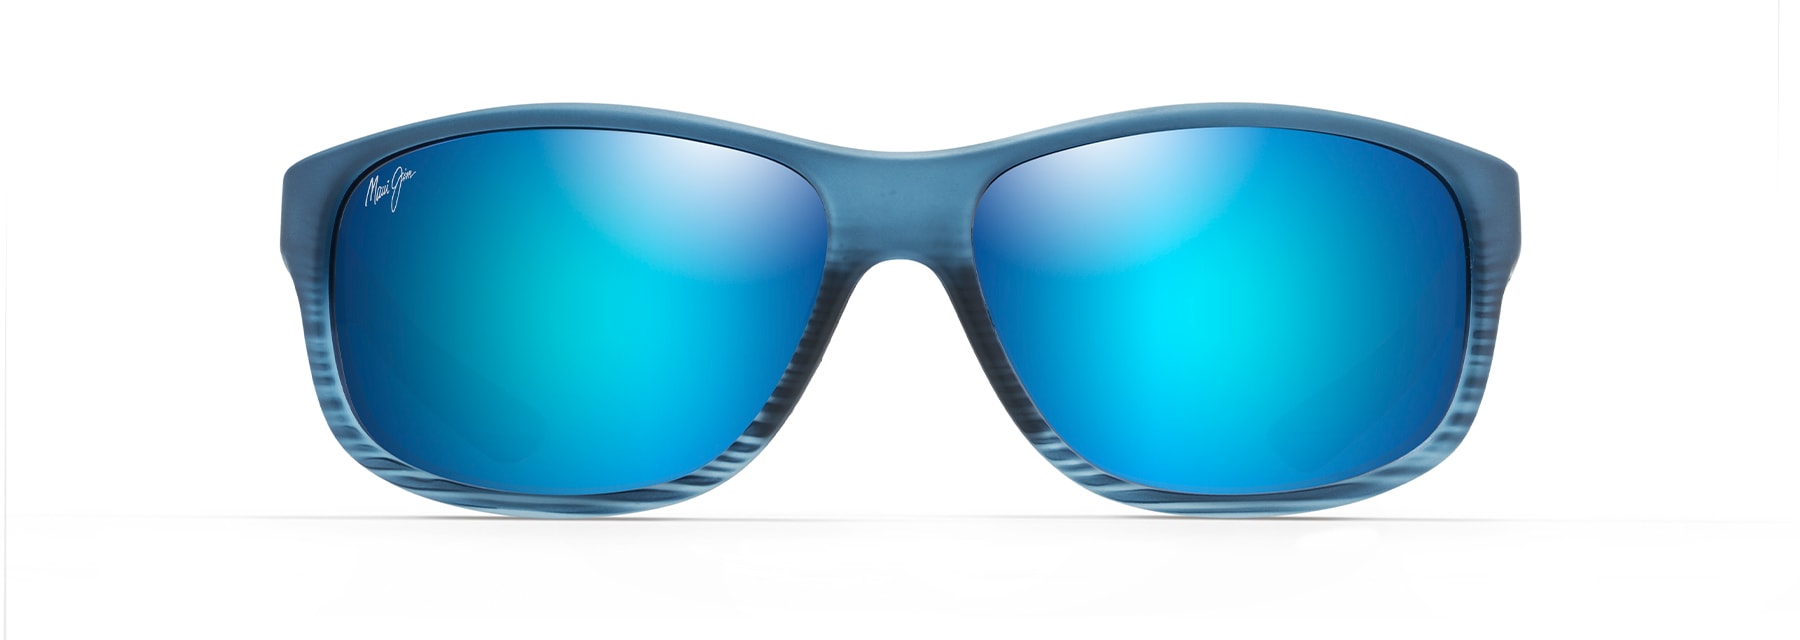 Explore Men's Polarized Sunglasses | Shop Top Styles by Maui Jim